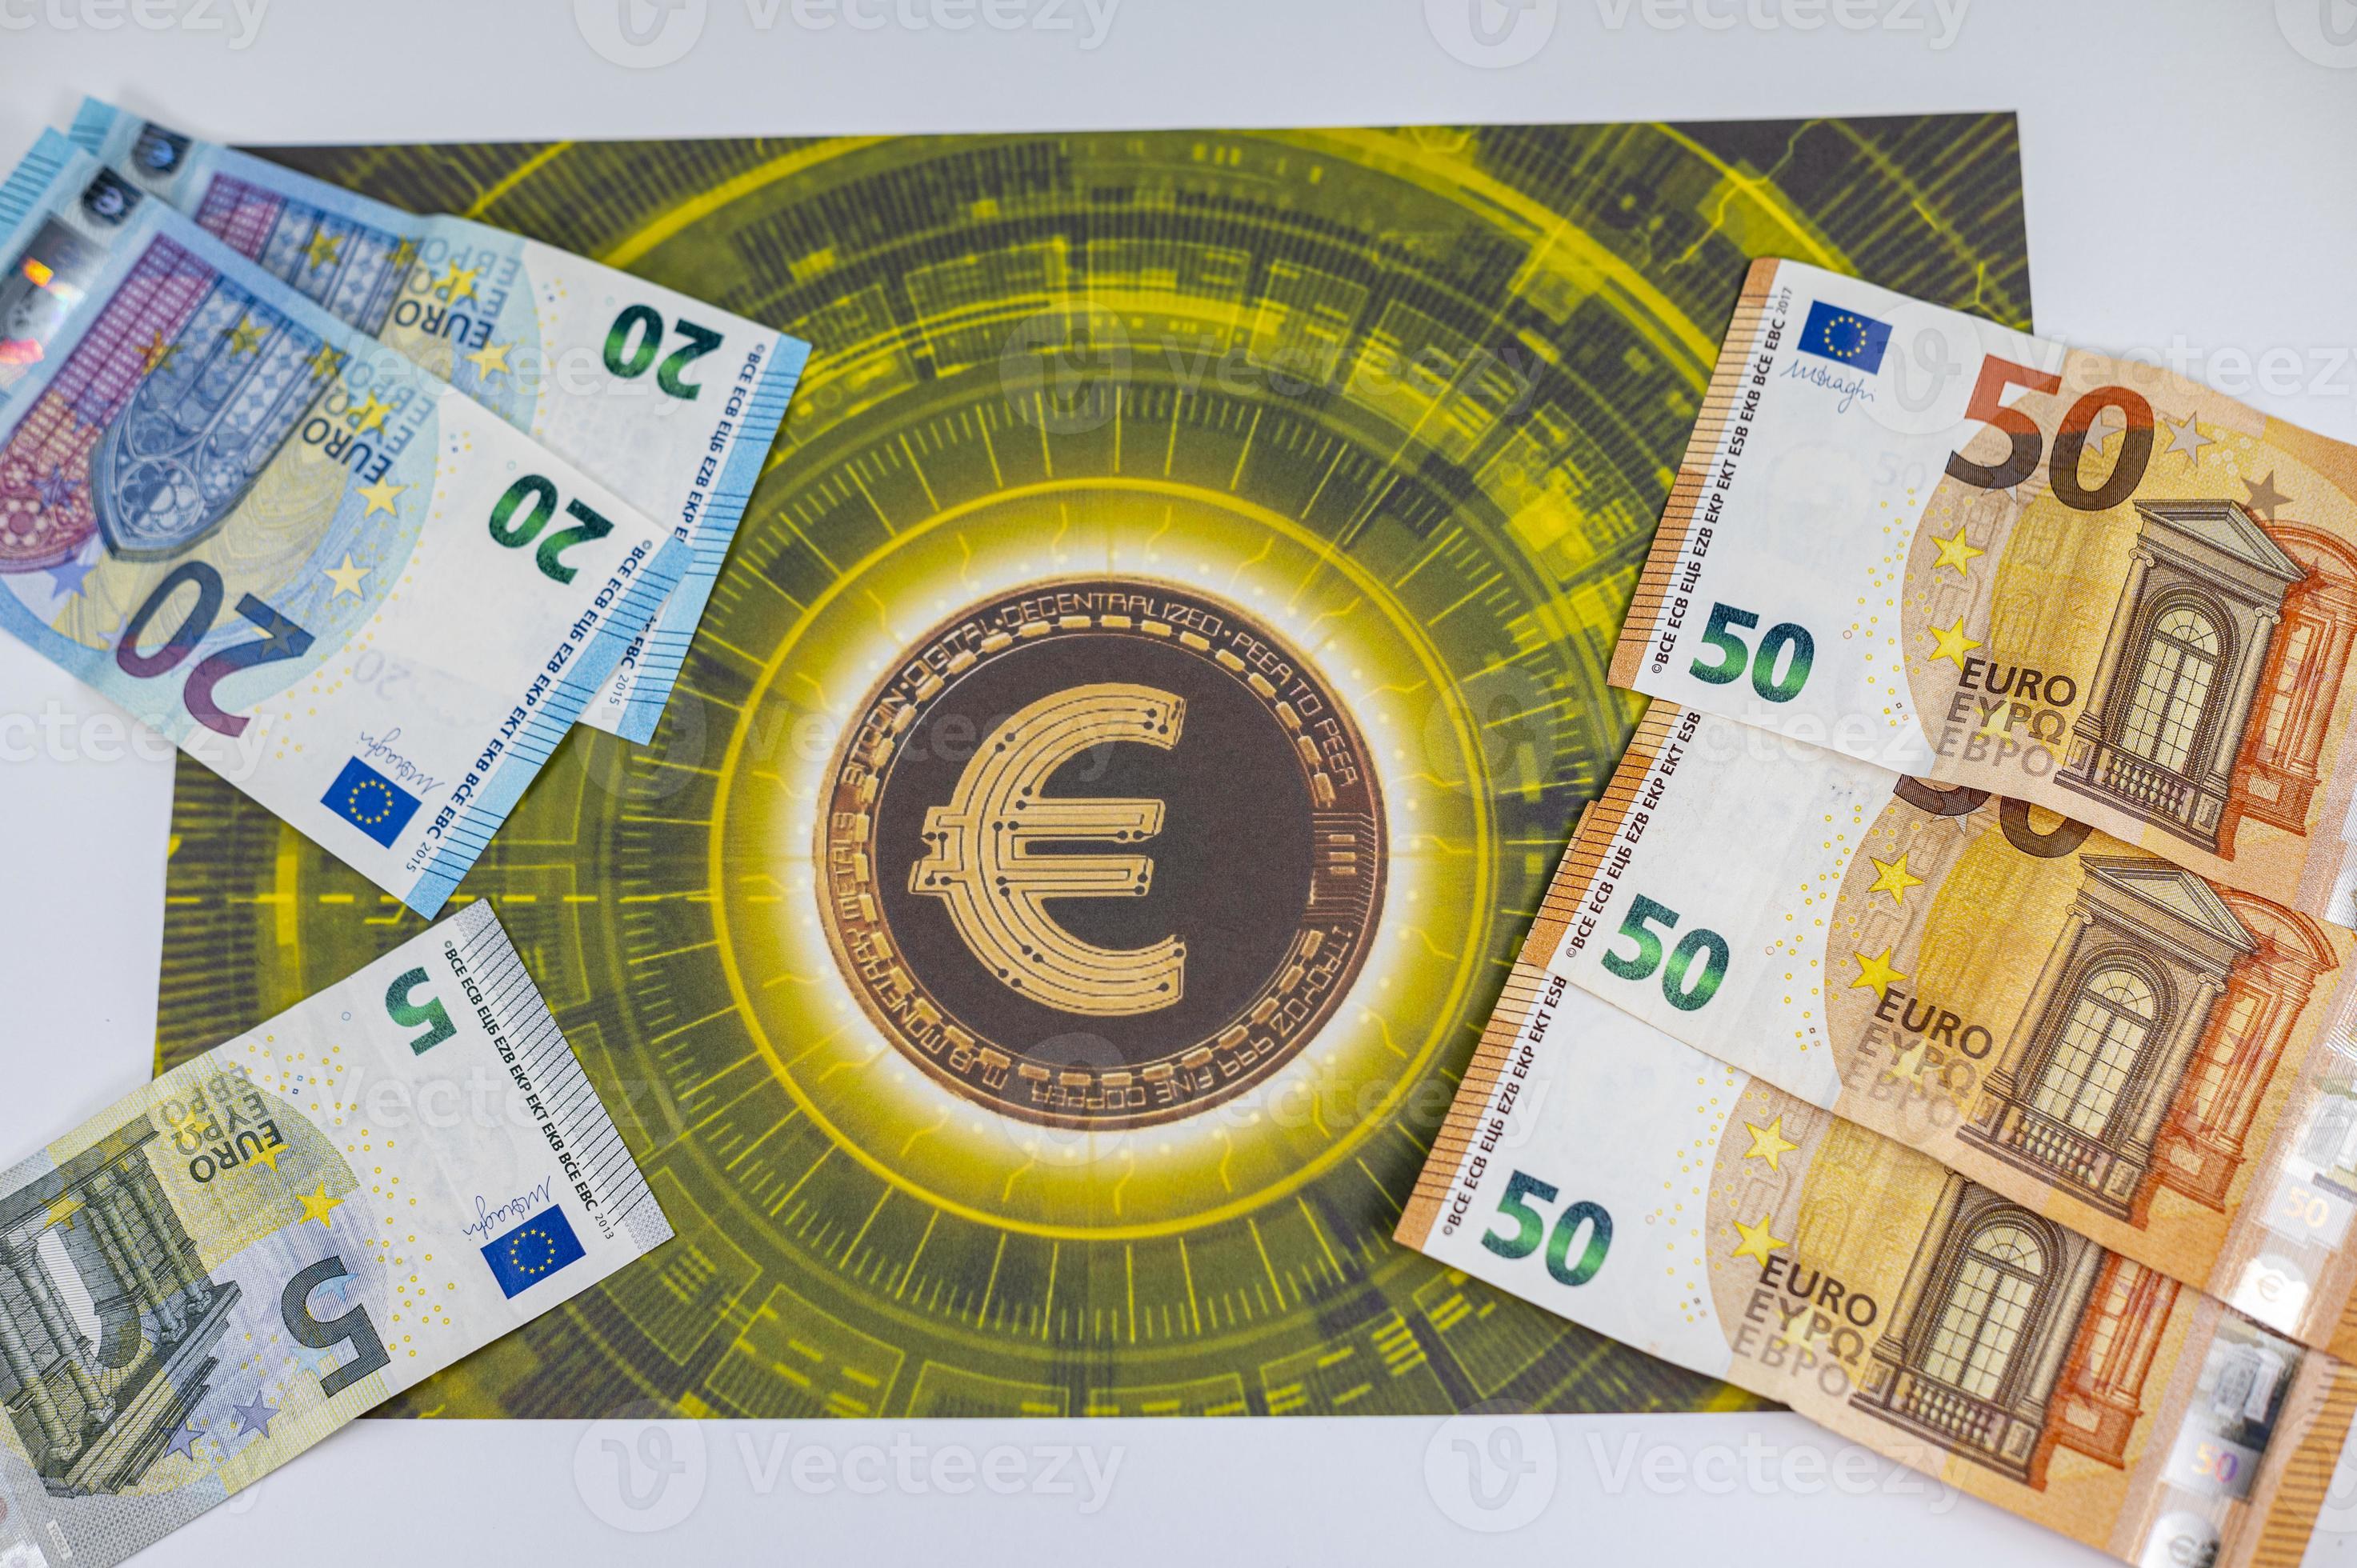 50 20 notas de 5 euros com o símbolo do euro foto